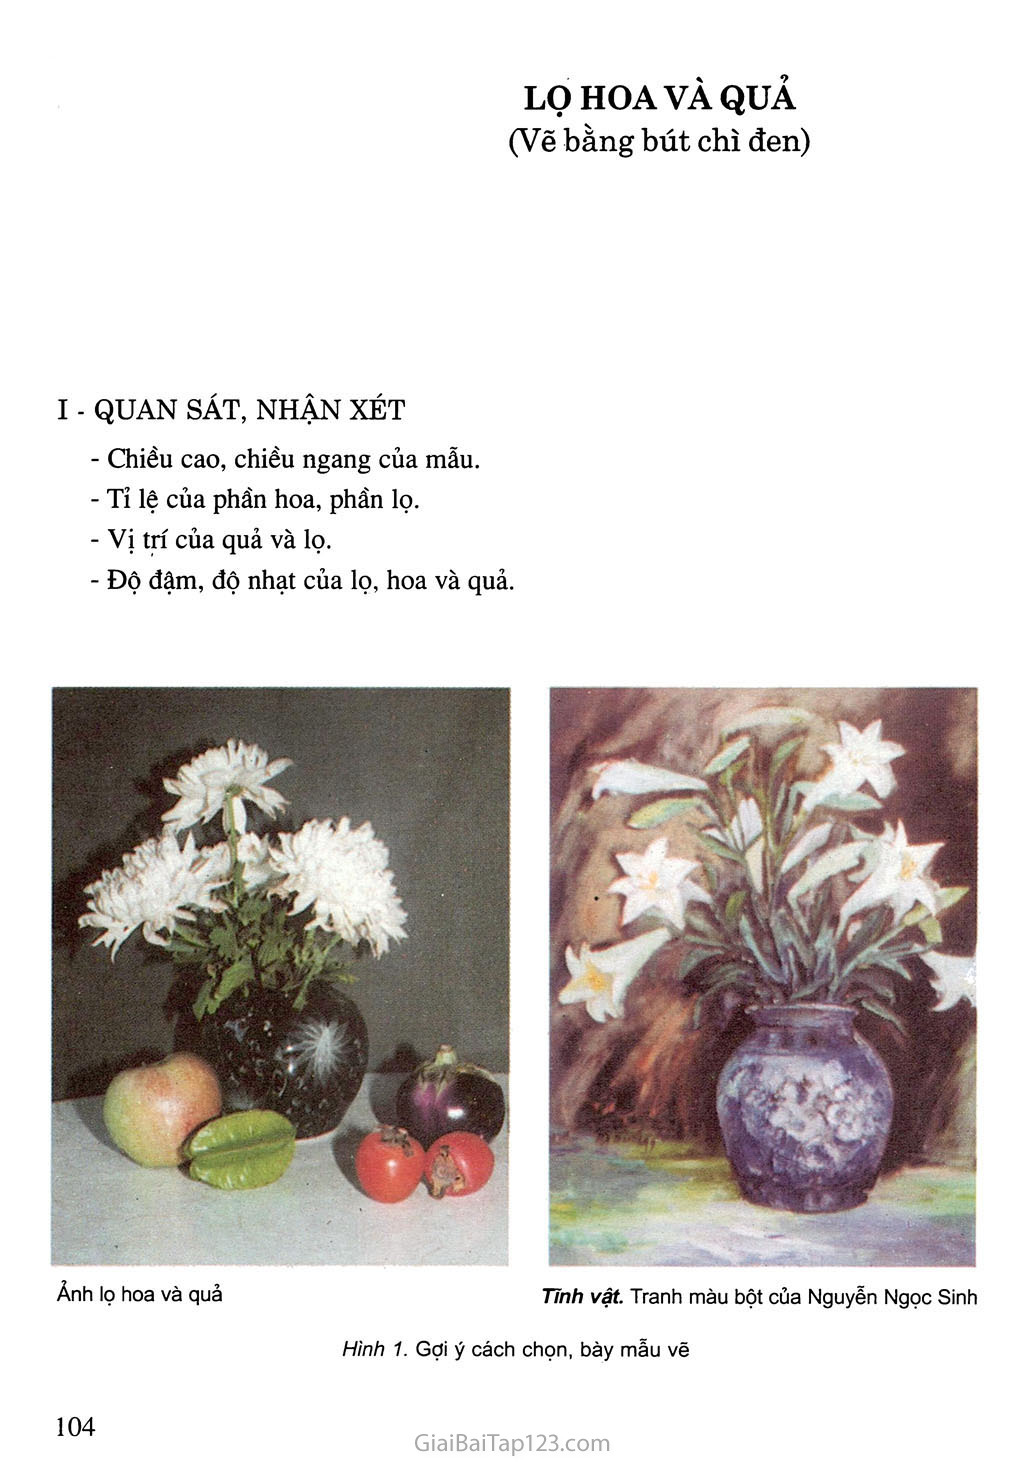 SGK Âm Nhạc và Mĩ Thuật 7  Bài 11 Vẽ theo mẫu  Lọ hoa và quả Vẽ bằng  bút chì đen